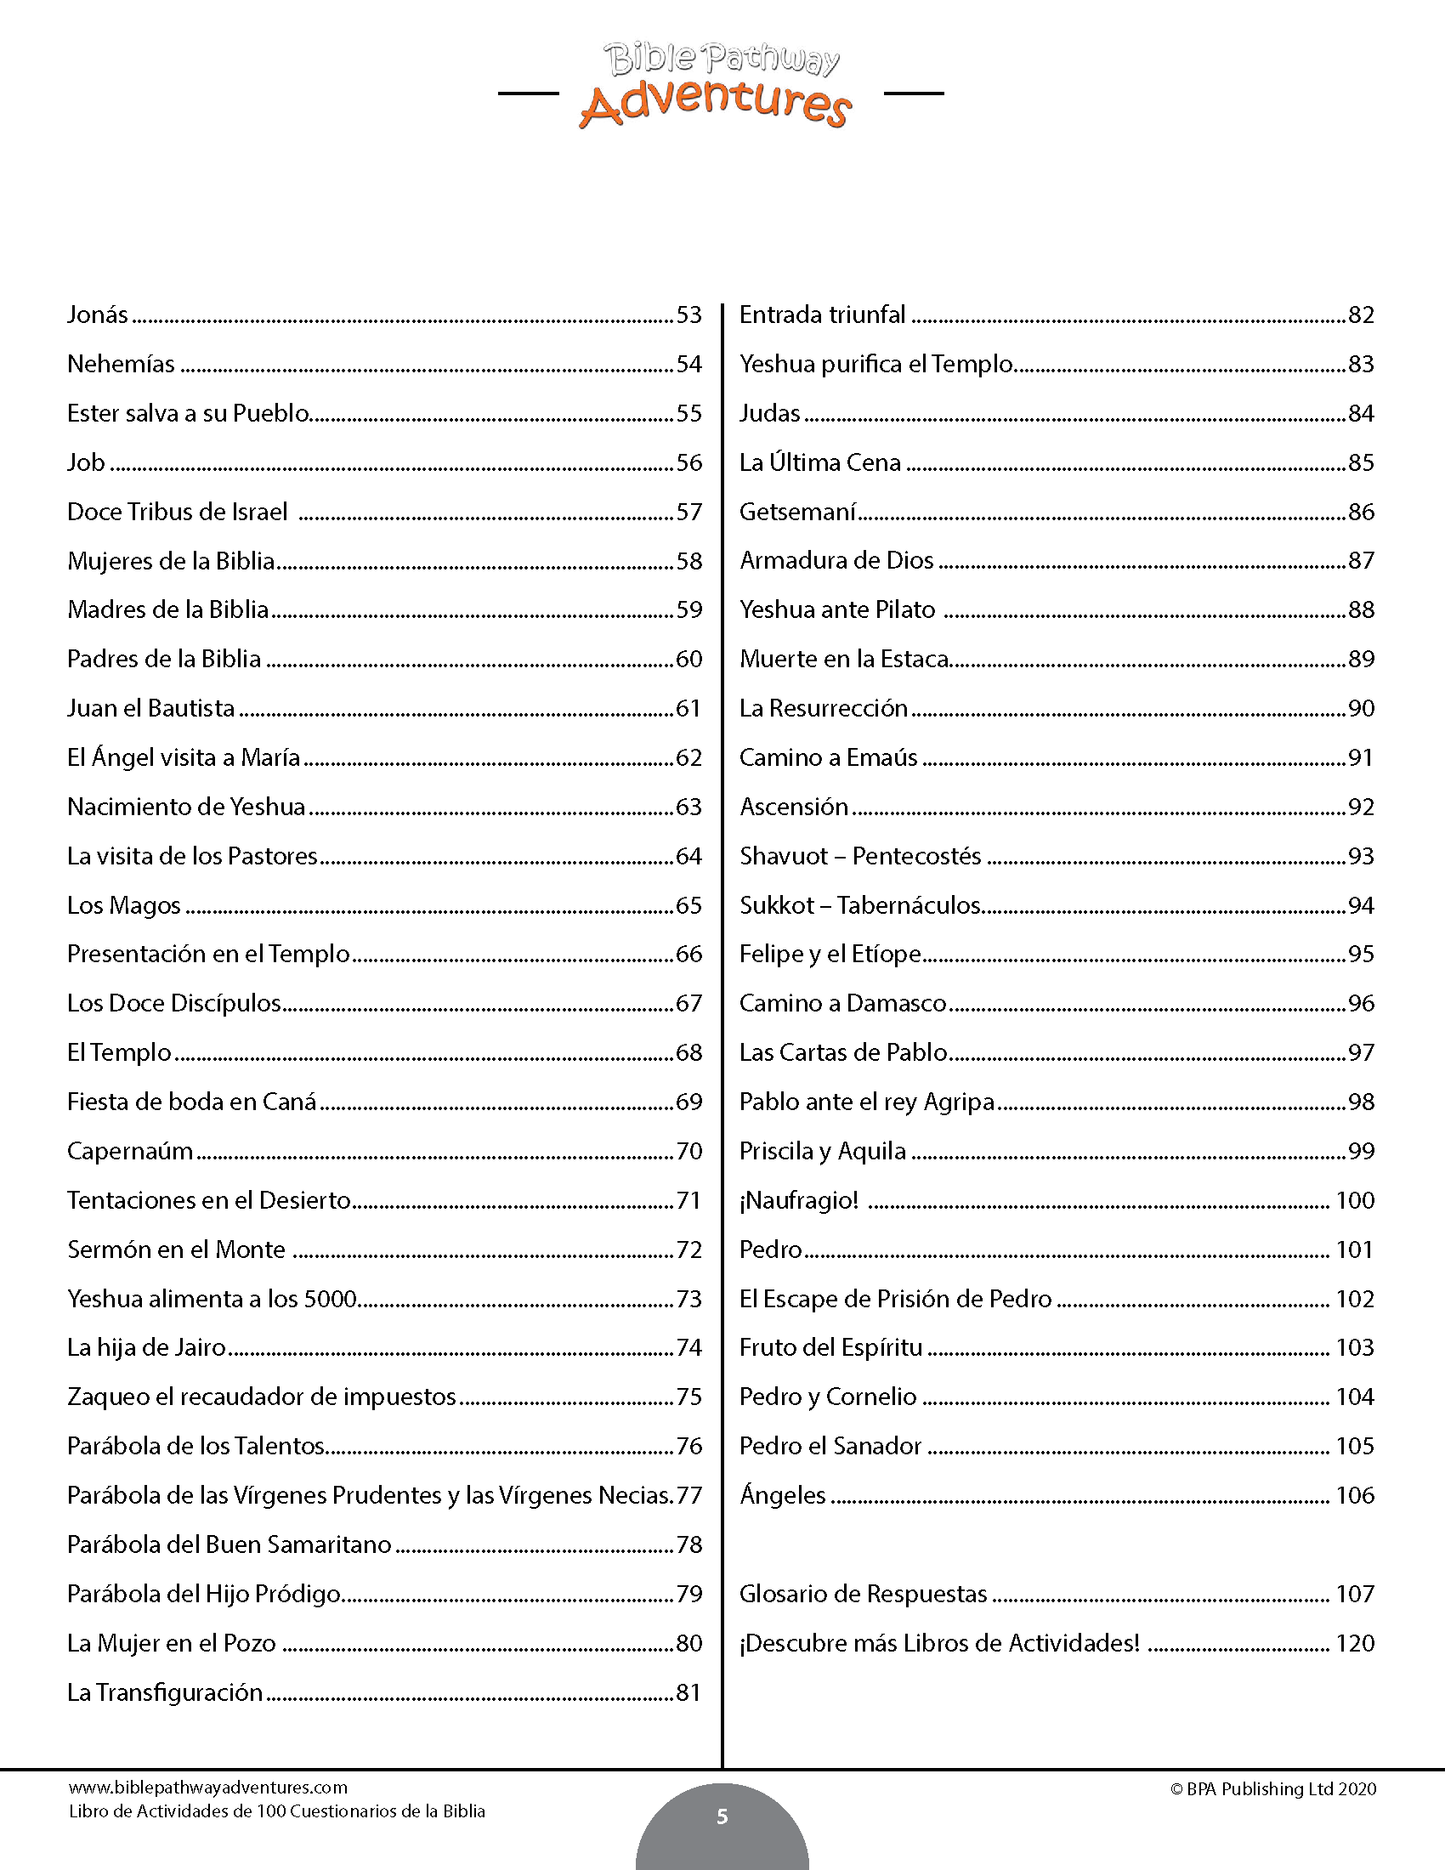 Libro de actividades de 100 cuestionarios de la Biblia (PDF)